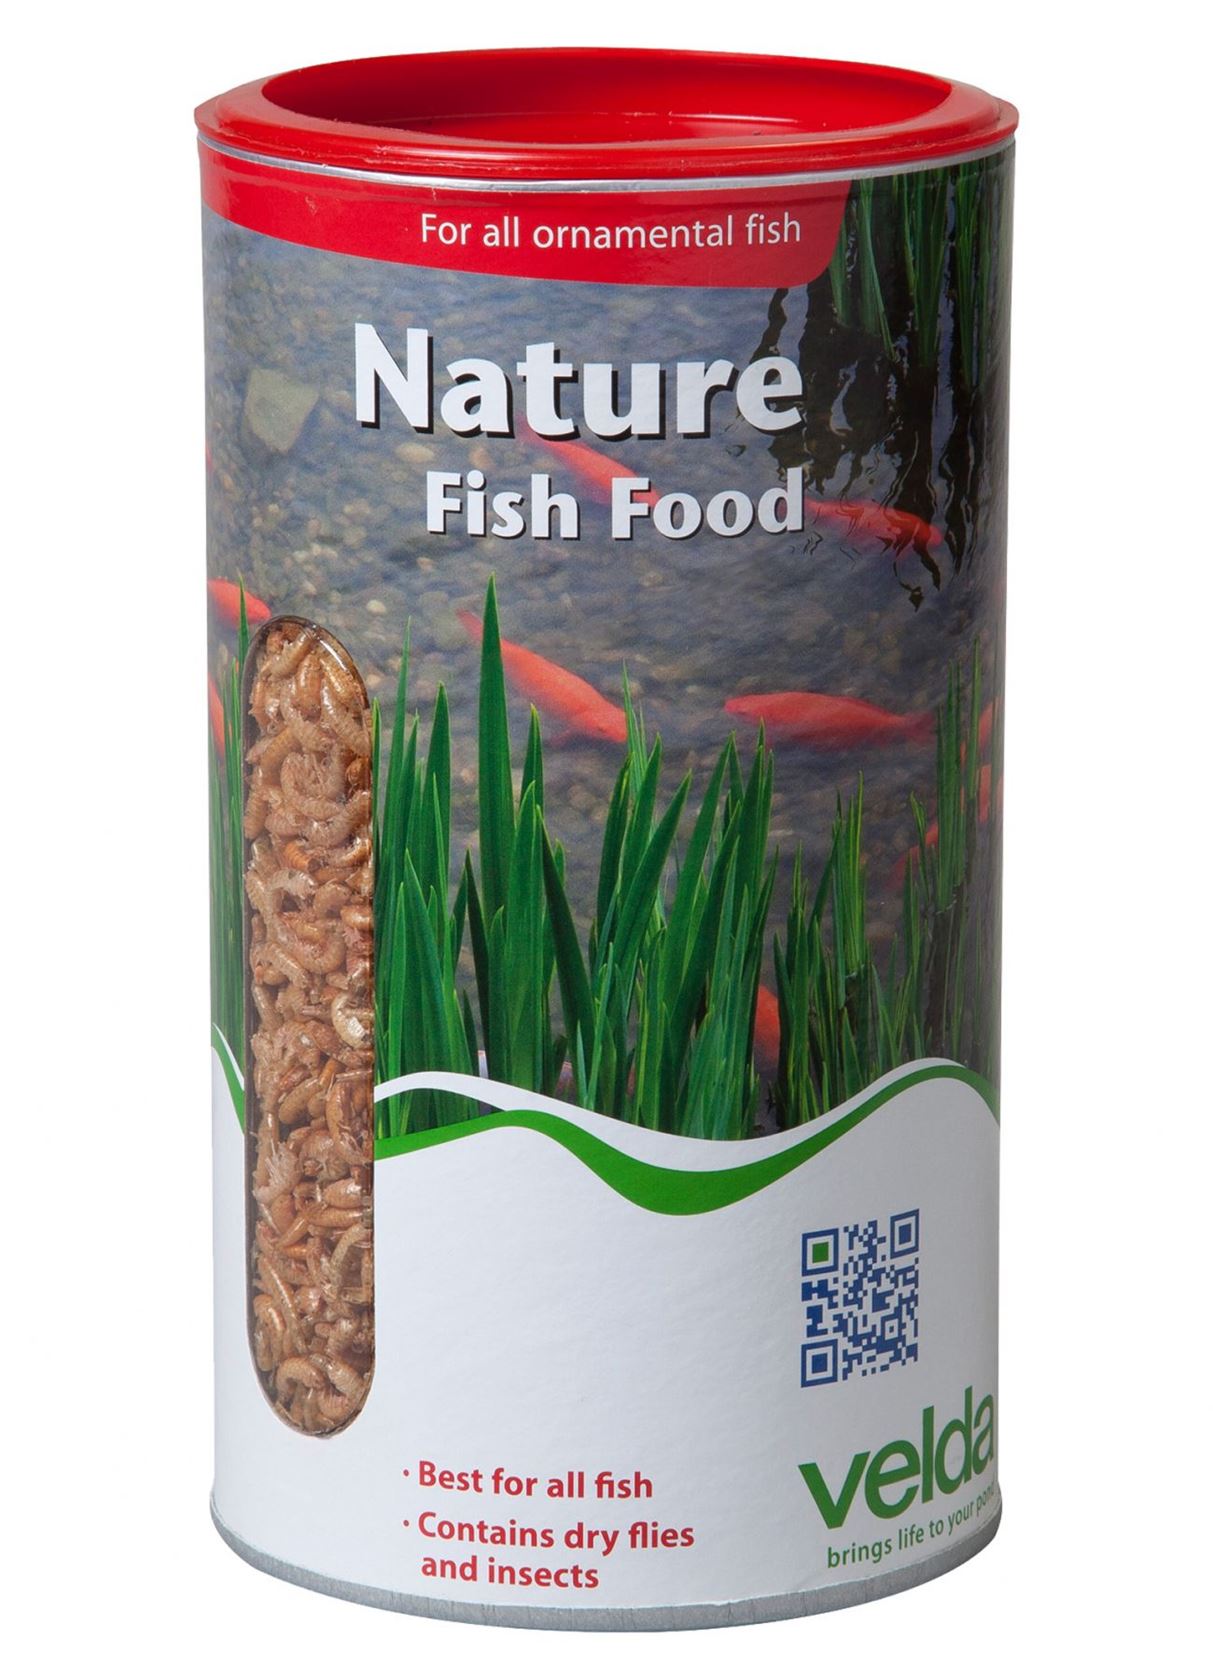 Nature-Fish-Food-2500-ml-natuurlijk-visvoer-van-waterinsecten